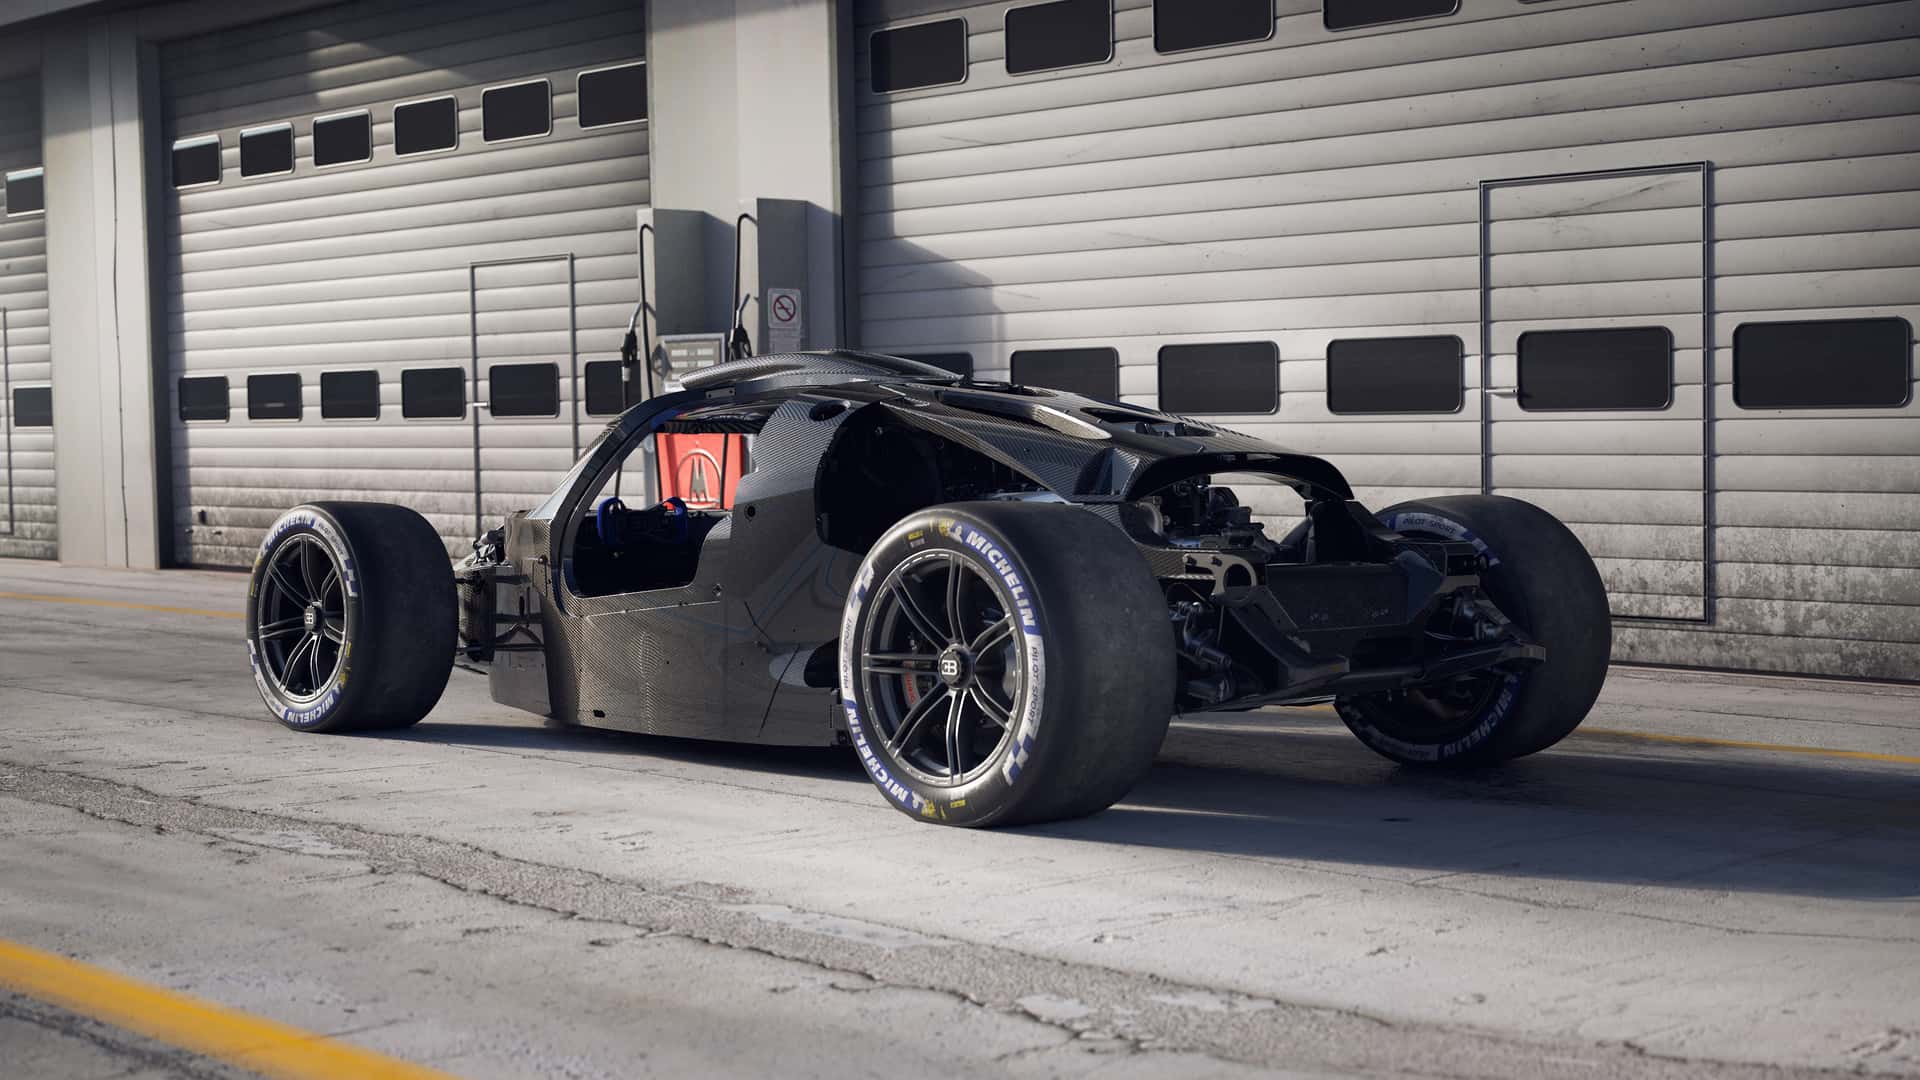 Đến bộ xương bên dưới lớp áo siêu xe Bugatti 4,3 triệu USD cũng vô cùng ấn tượng - Ảnh 2.